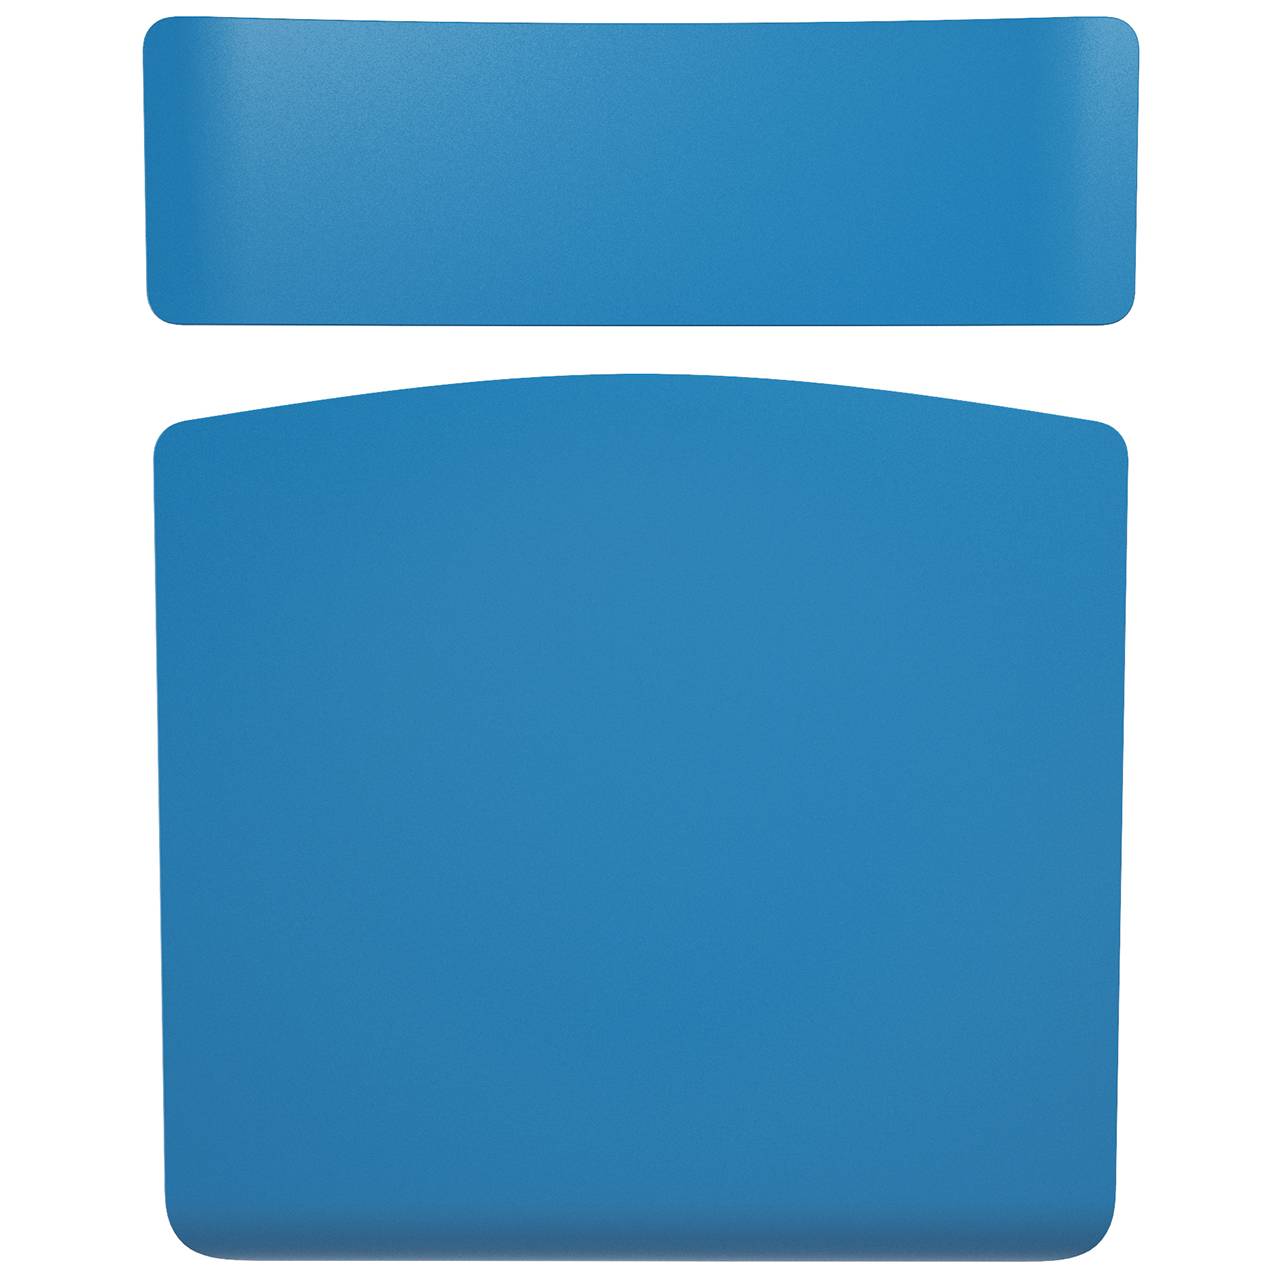 Стул ученический регулируемый (гр. 2-4, 3-5, 4-6 или 5-7) коричневый Синий 2-4 прямоугольная